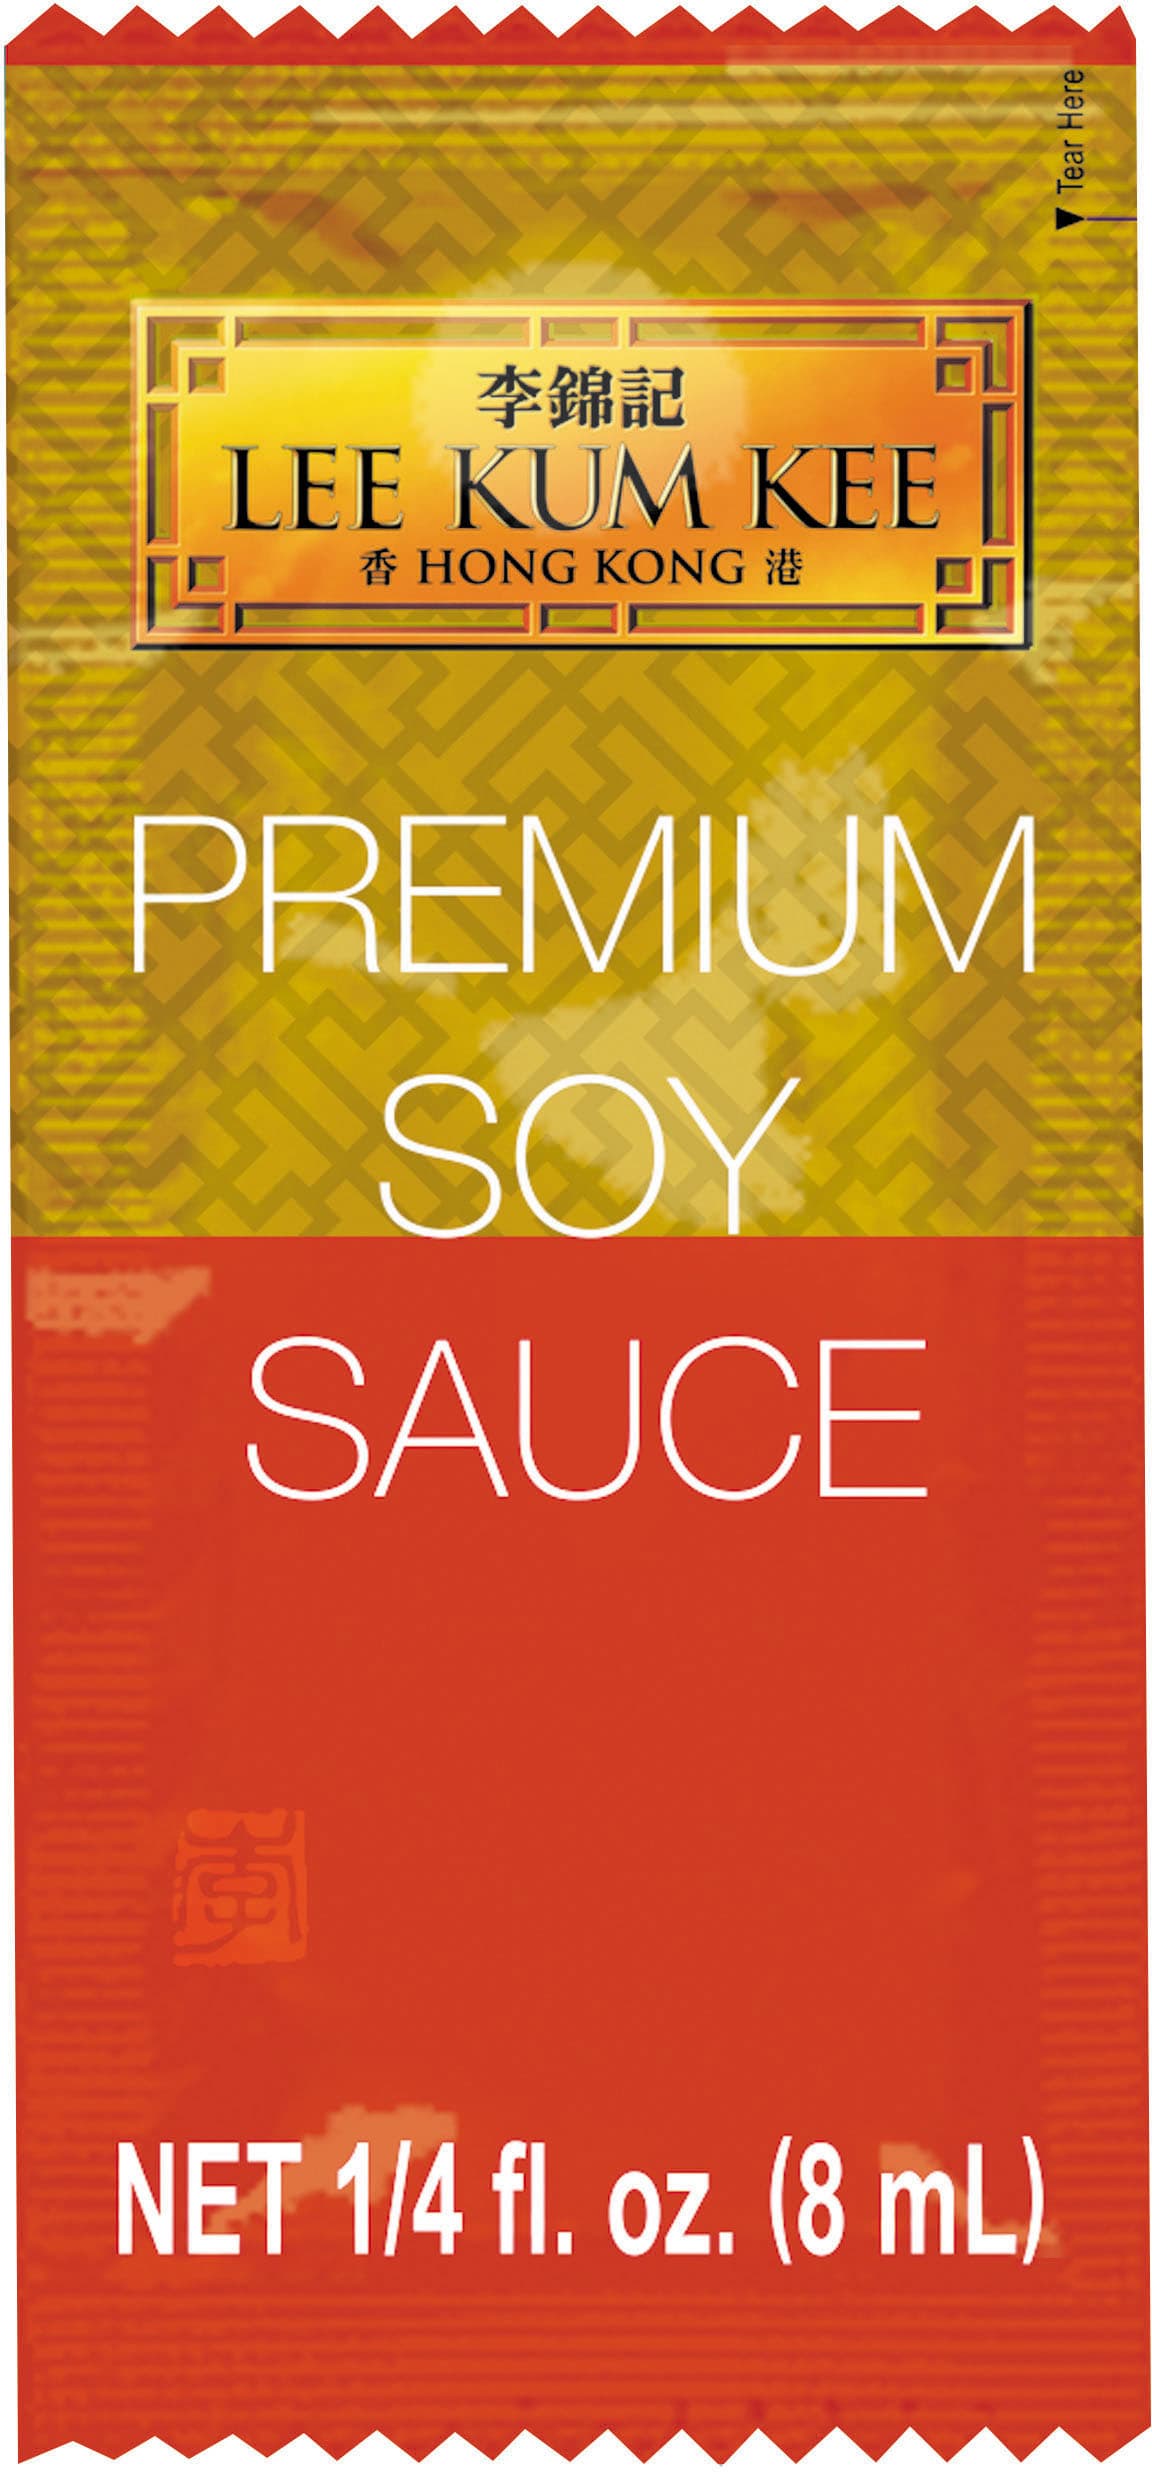 LKK's Premium Soy Sauce, 8ml Packet